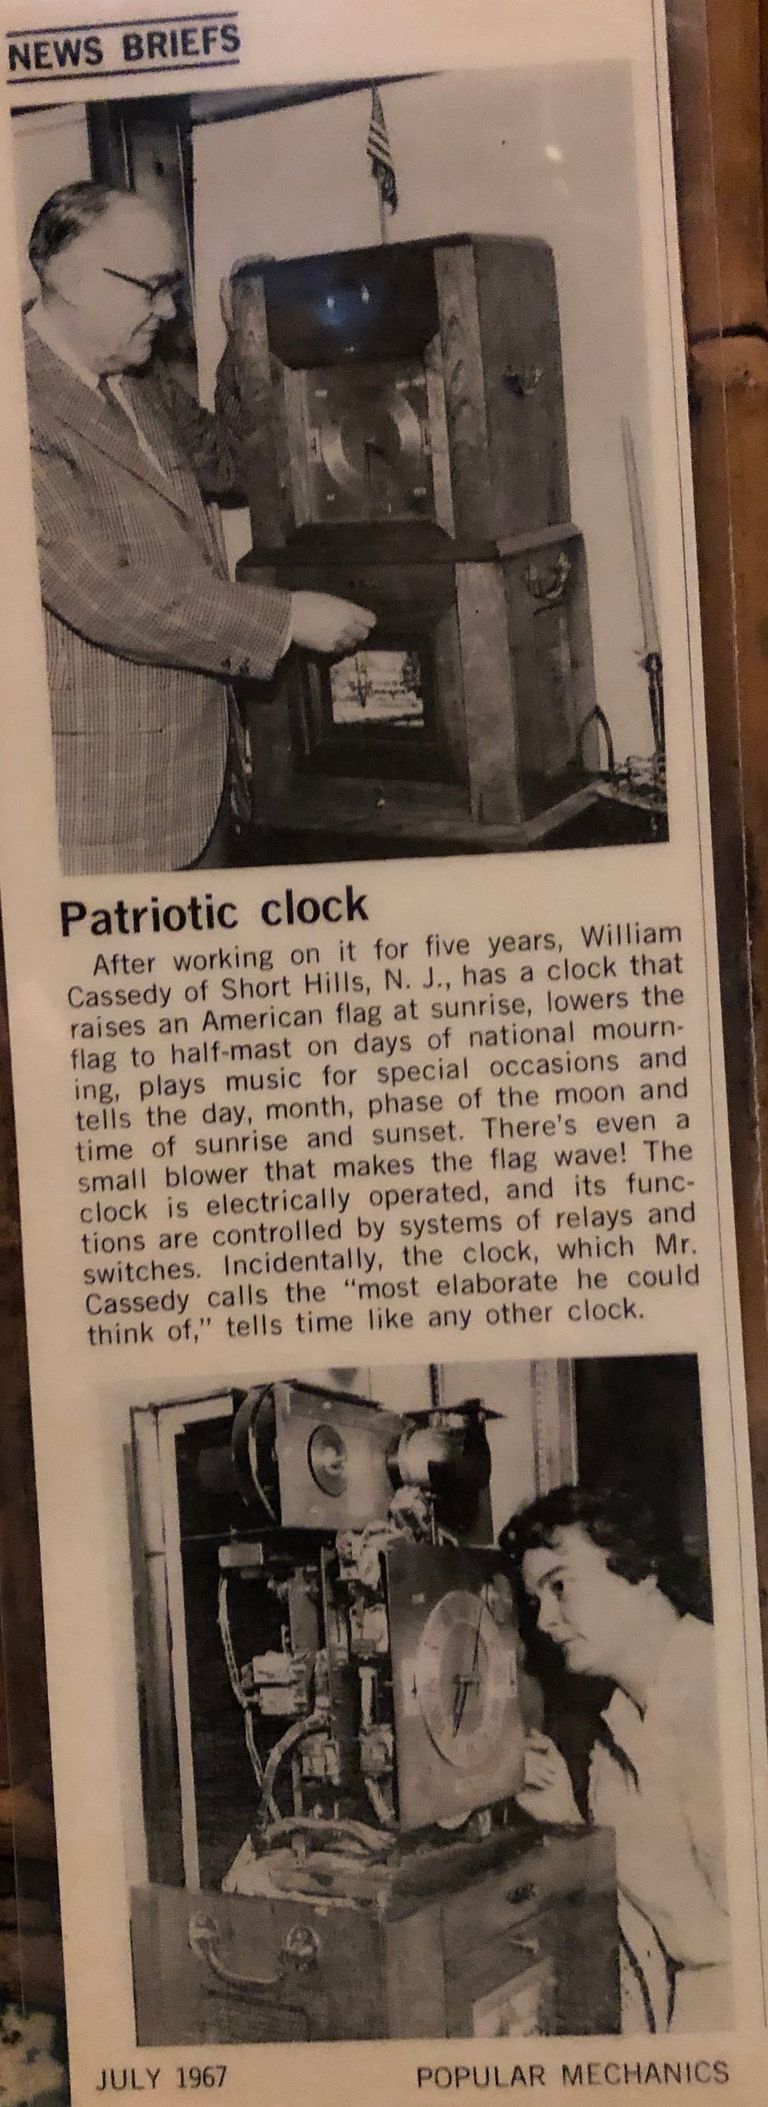          Cassedy: William Cassedy's Patriotic Clock article, 1967 picture number 1
   